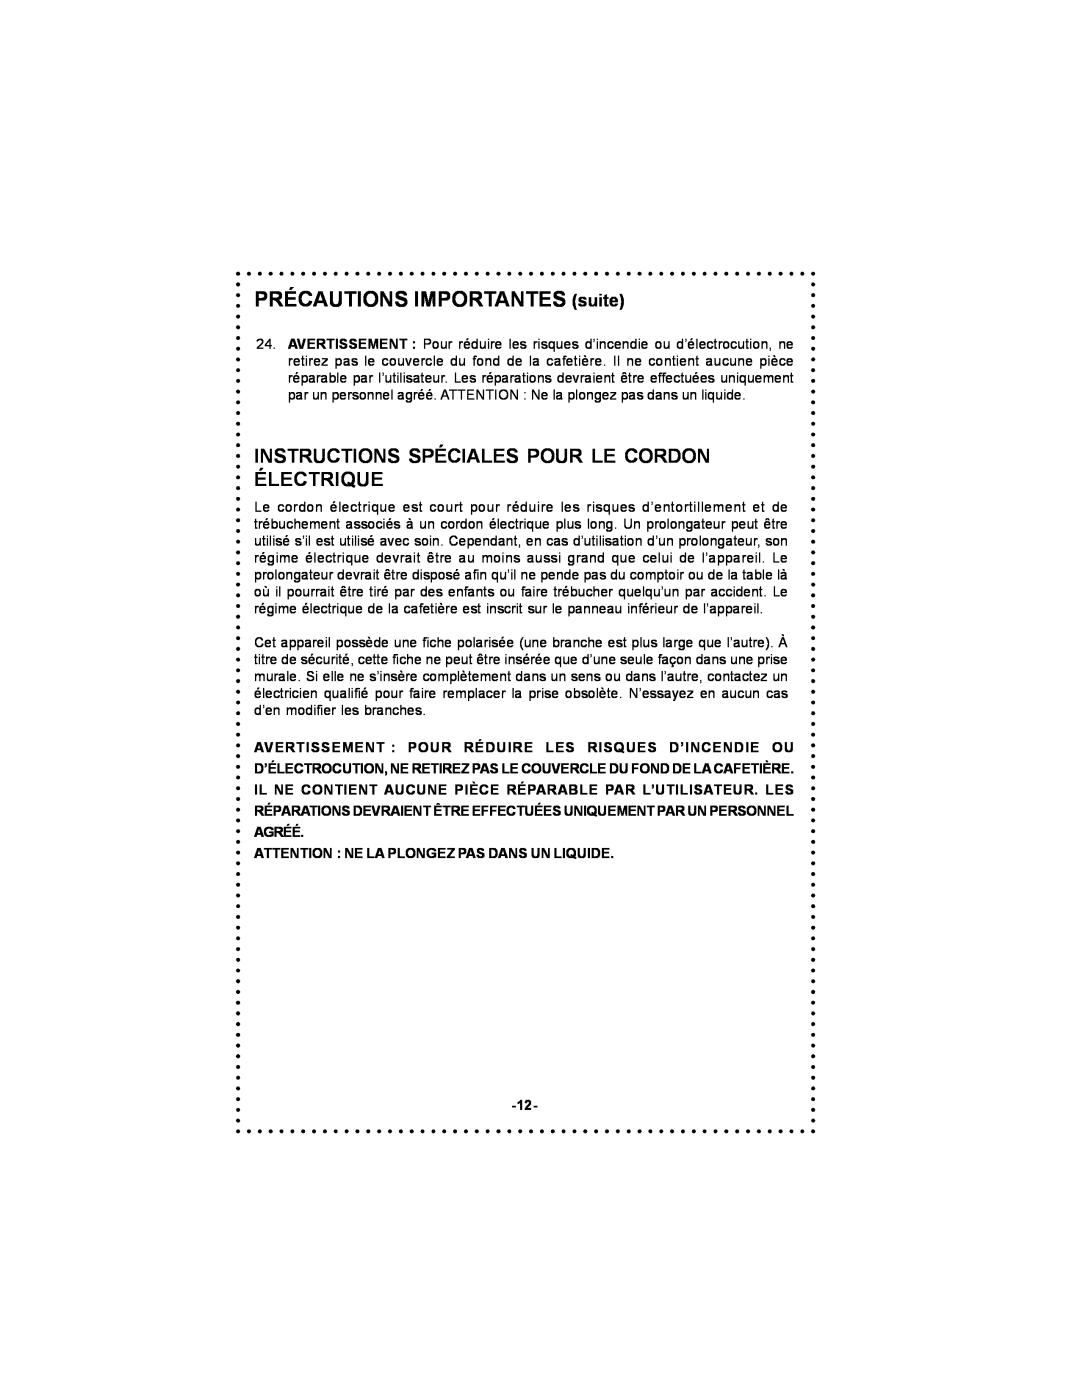 DeLonghi DC59TW instruction manual PRÉCAUTIONS IMPORTANTES suite, Instructions Spéciales Pour Le Cordon Électrique 